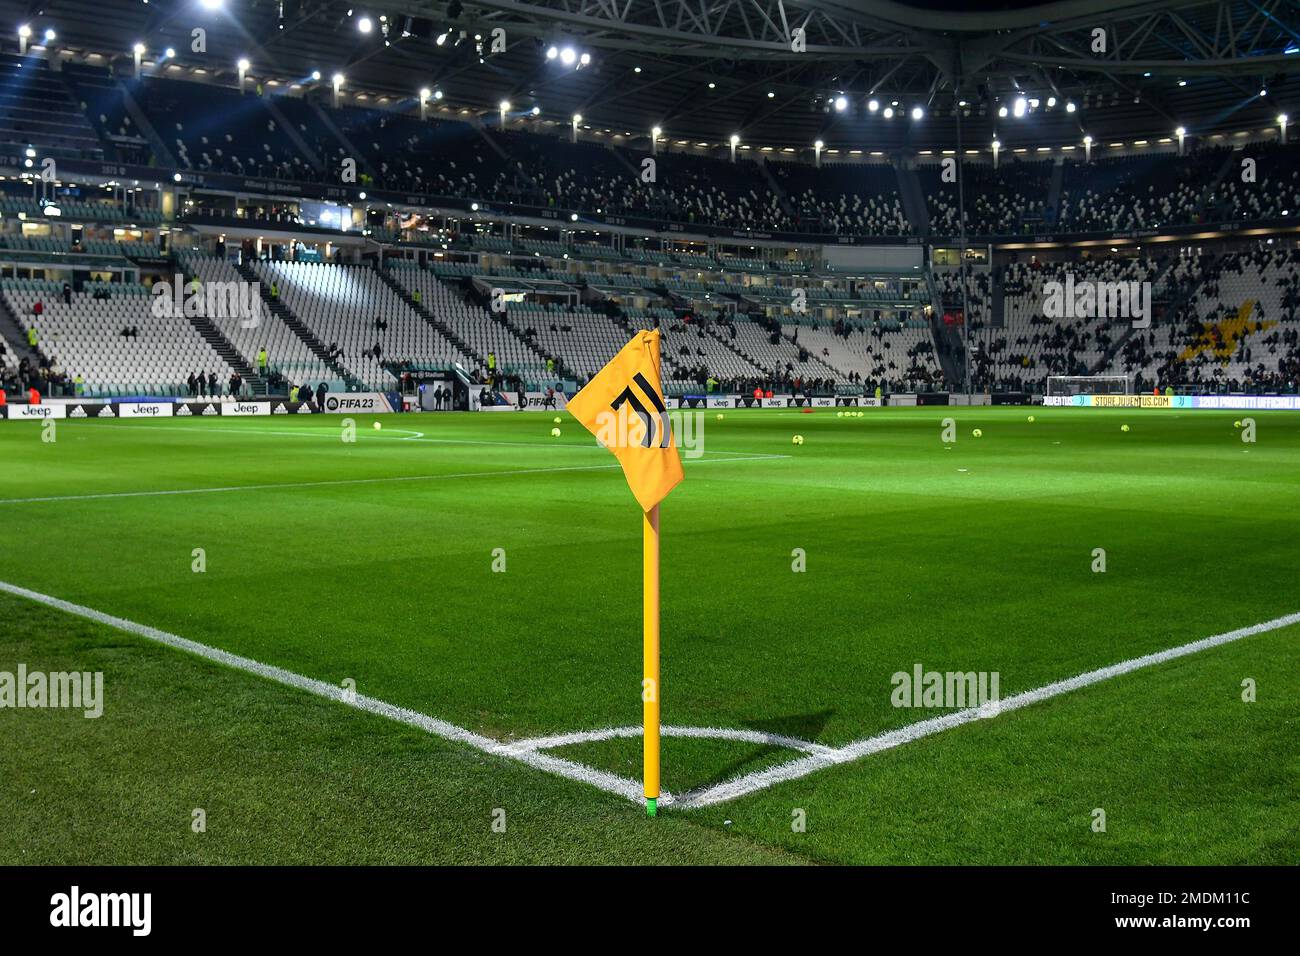 Le logo Juventus est imprimé sur un drapeau d'angle lors de la série Un match de football entre Juventus FC et Atalanta BC au stade Juventus de Turin (IT Banque D'Images